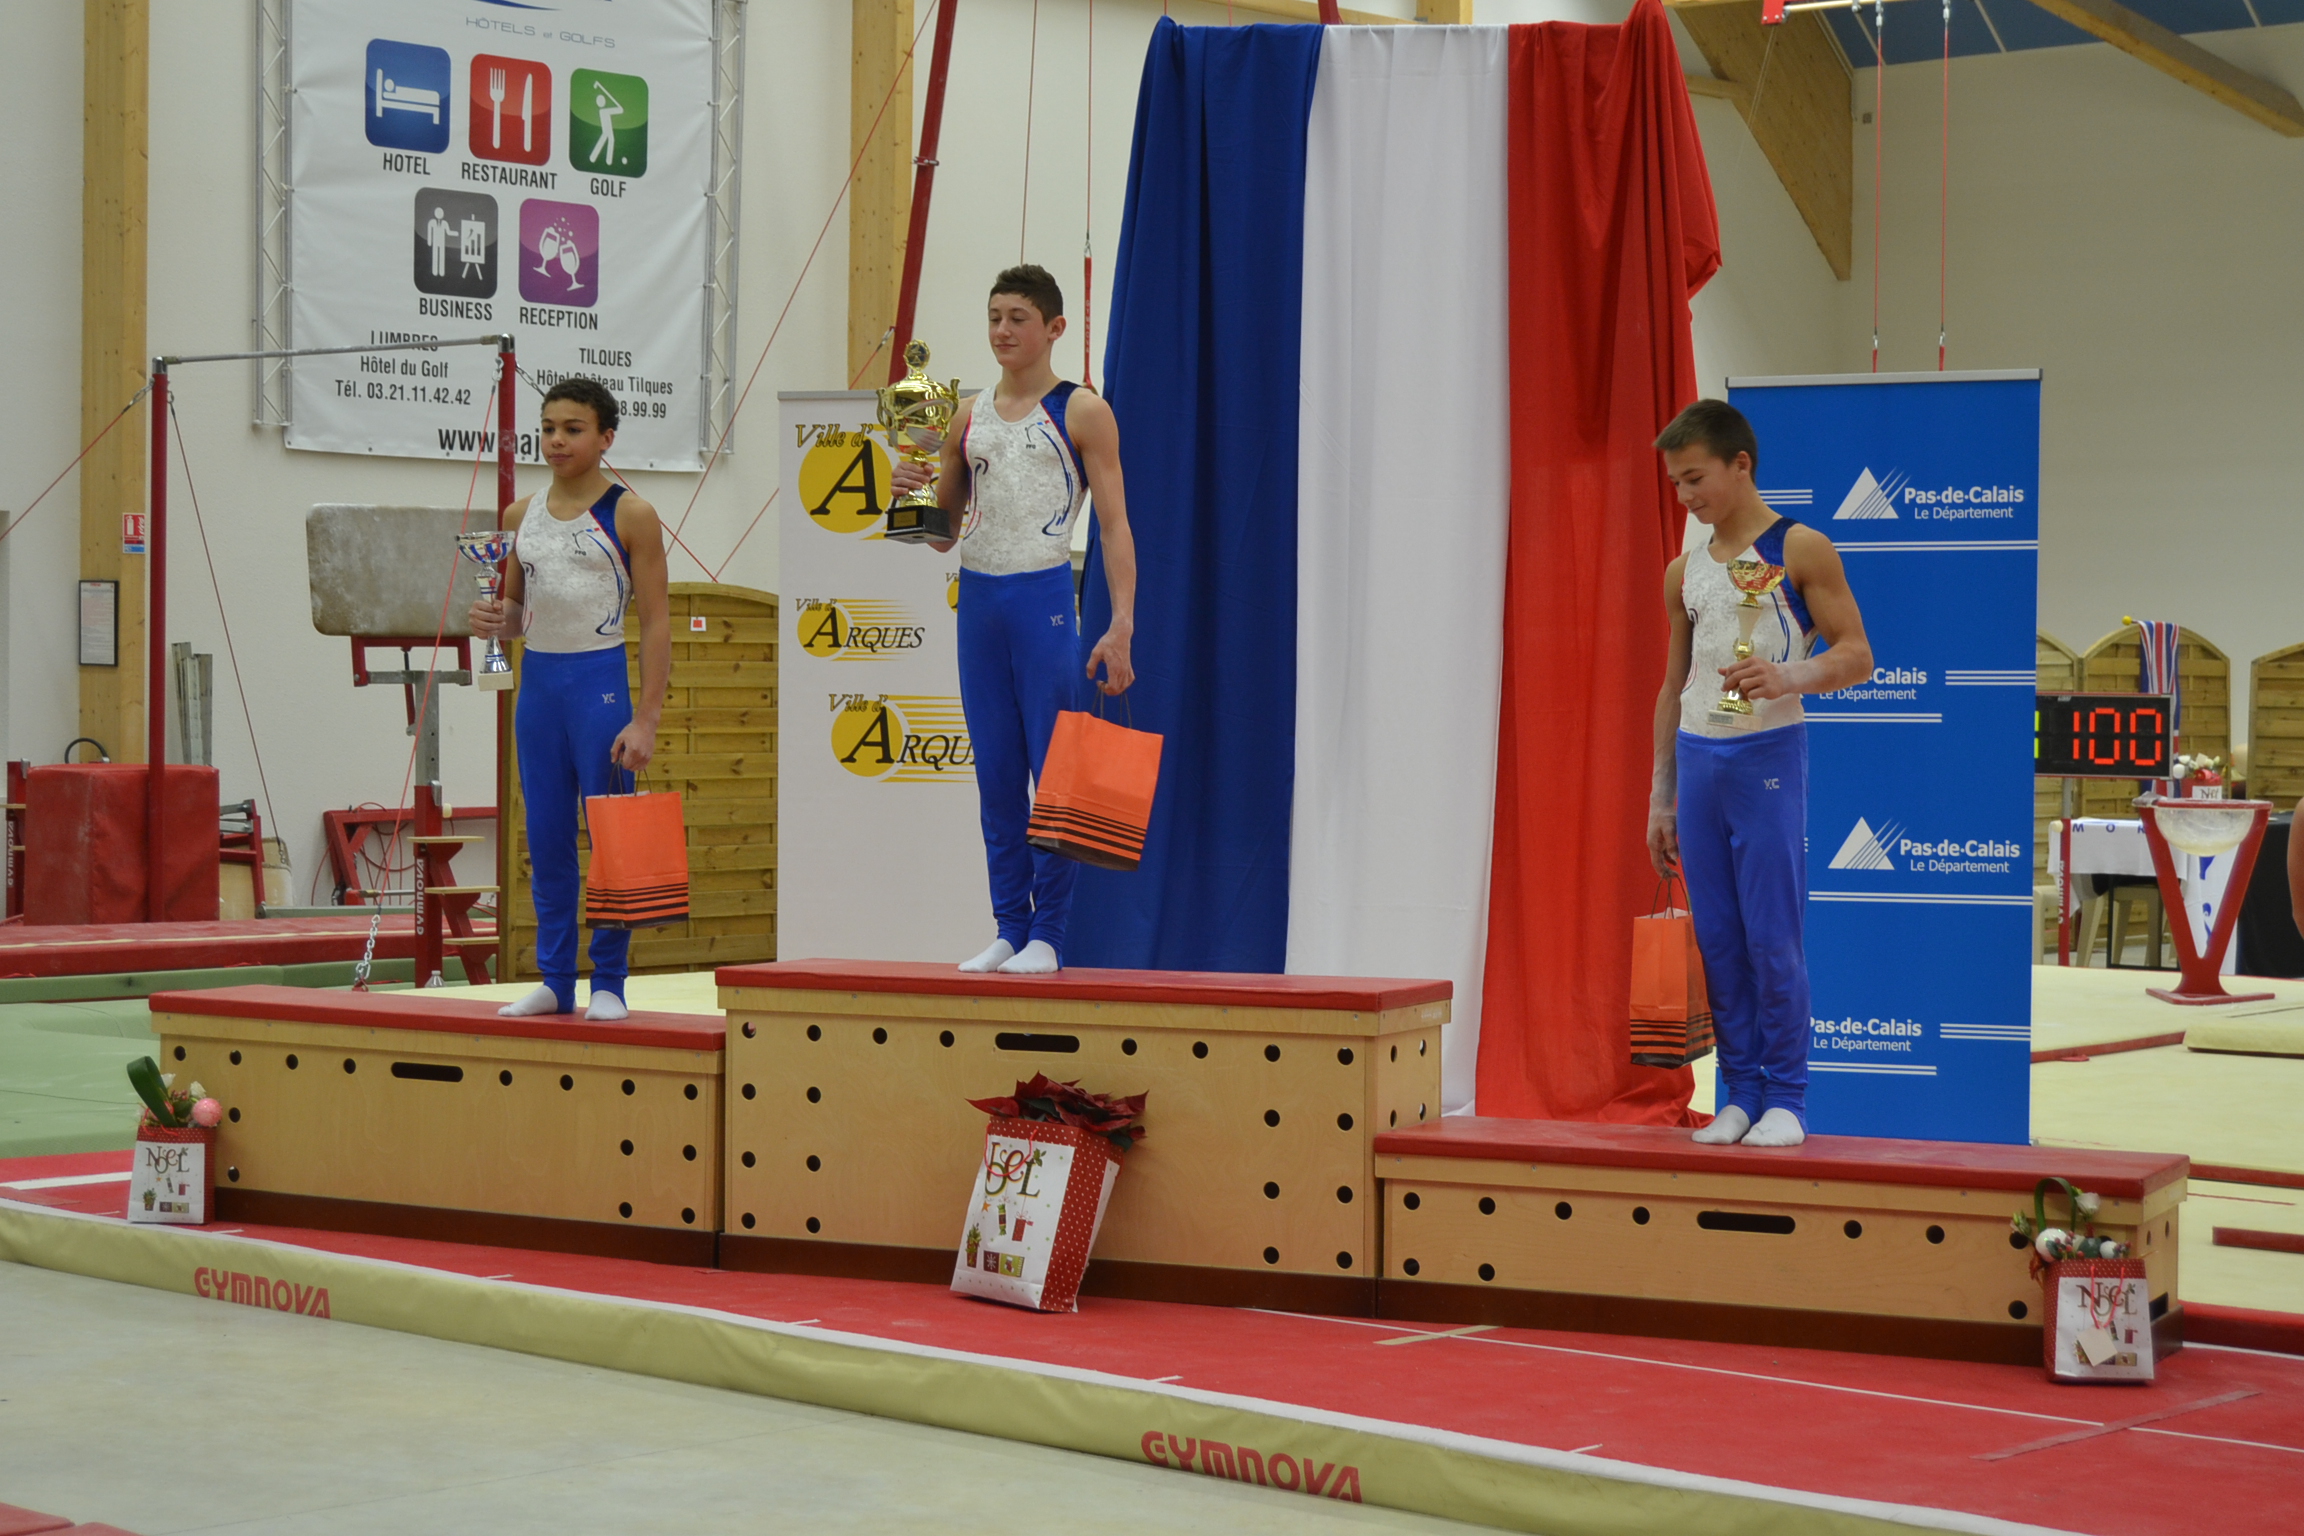 Résultats: 18ème Tournoi International de Gymnastique du Pas-de-Calais Coupes de la Ville d'Arques